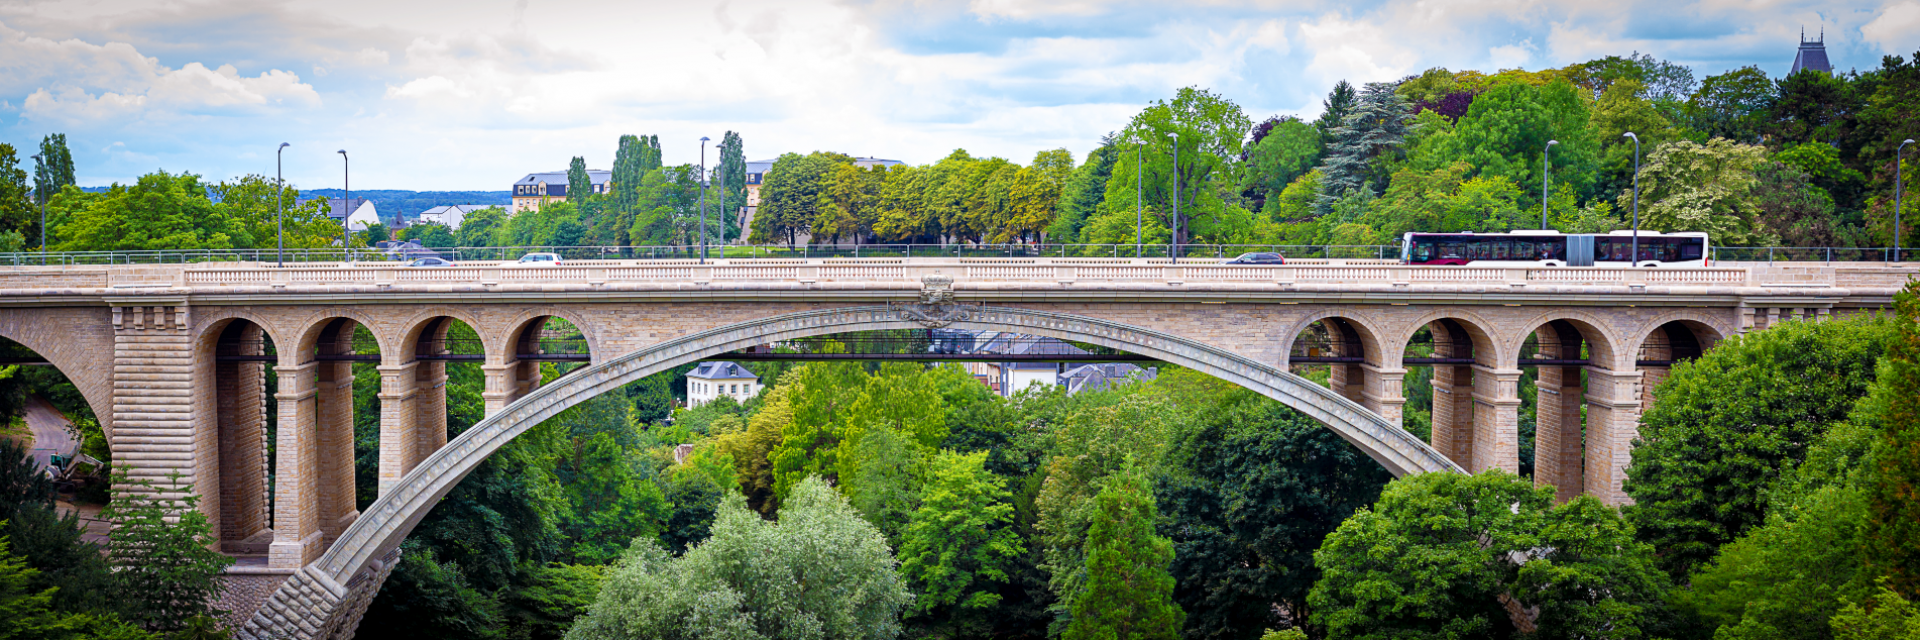 Pont Adolphe bridge in Luxembourg